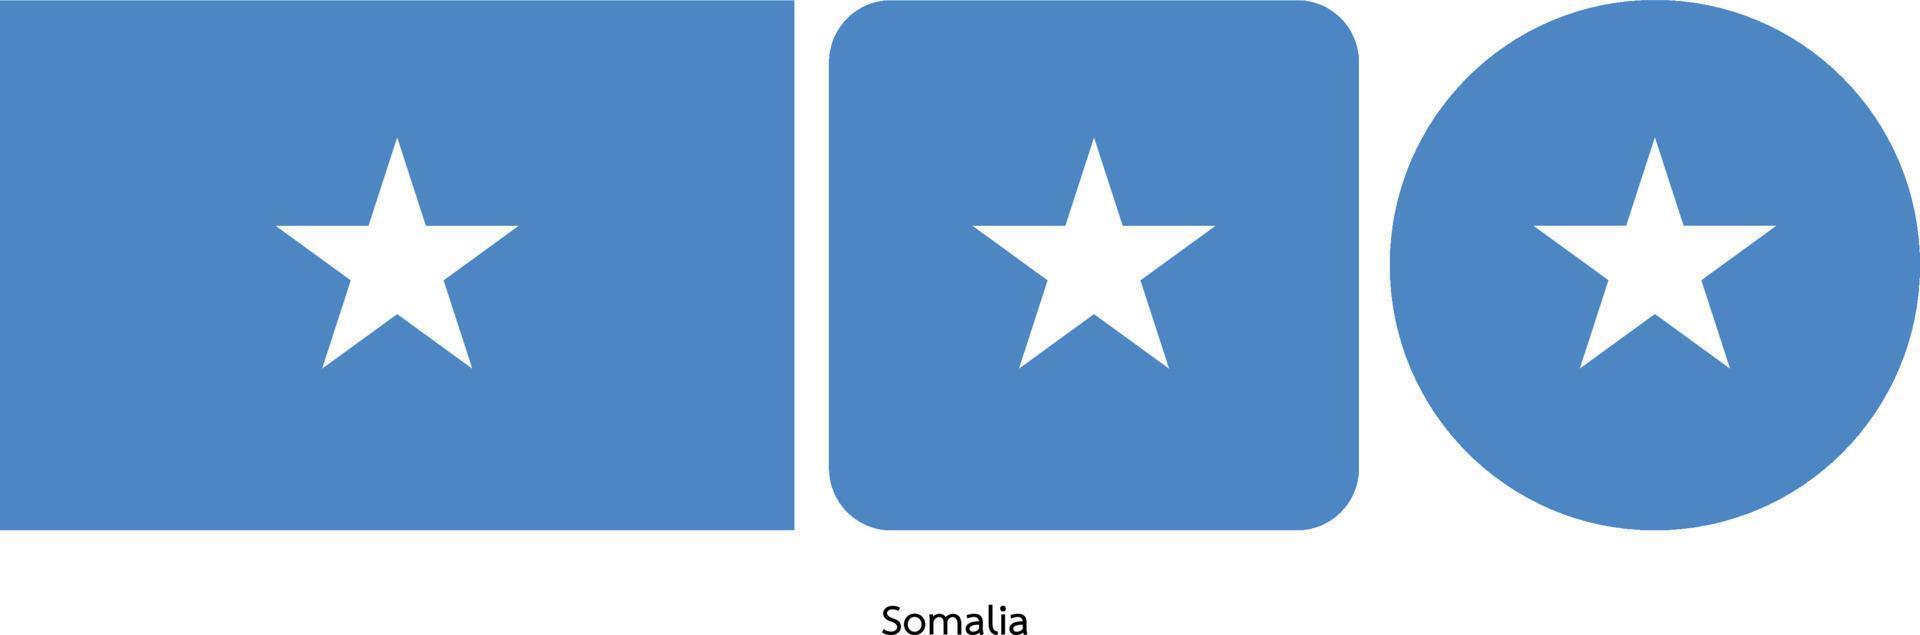 bandiera della somalia, illustrazione vettoriale